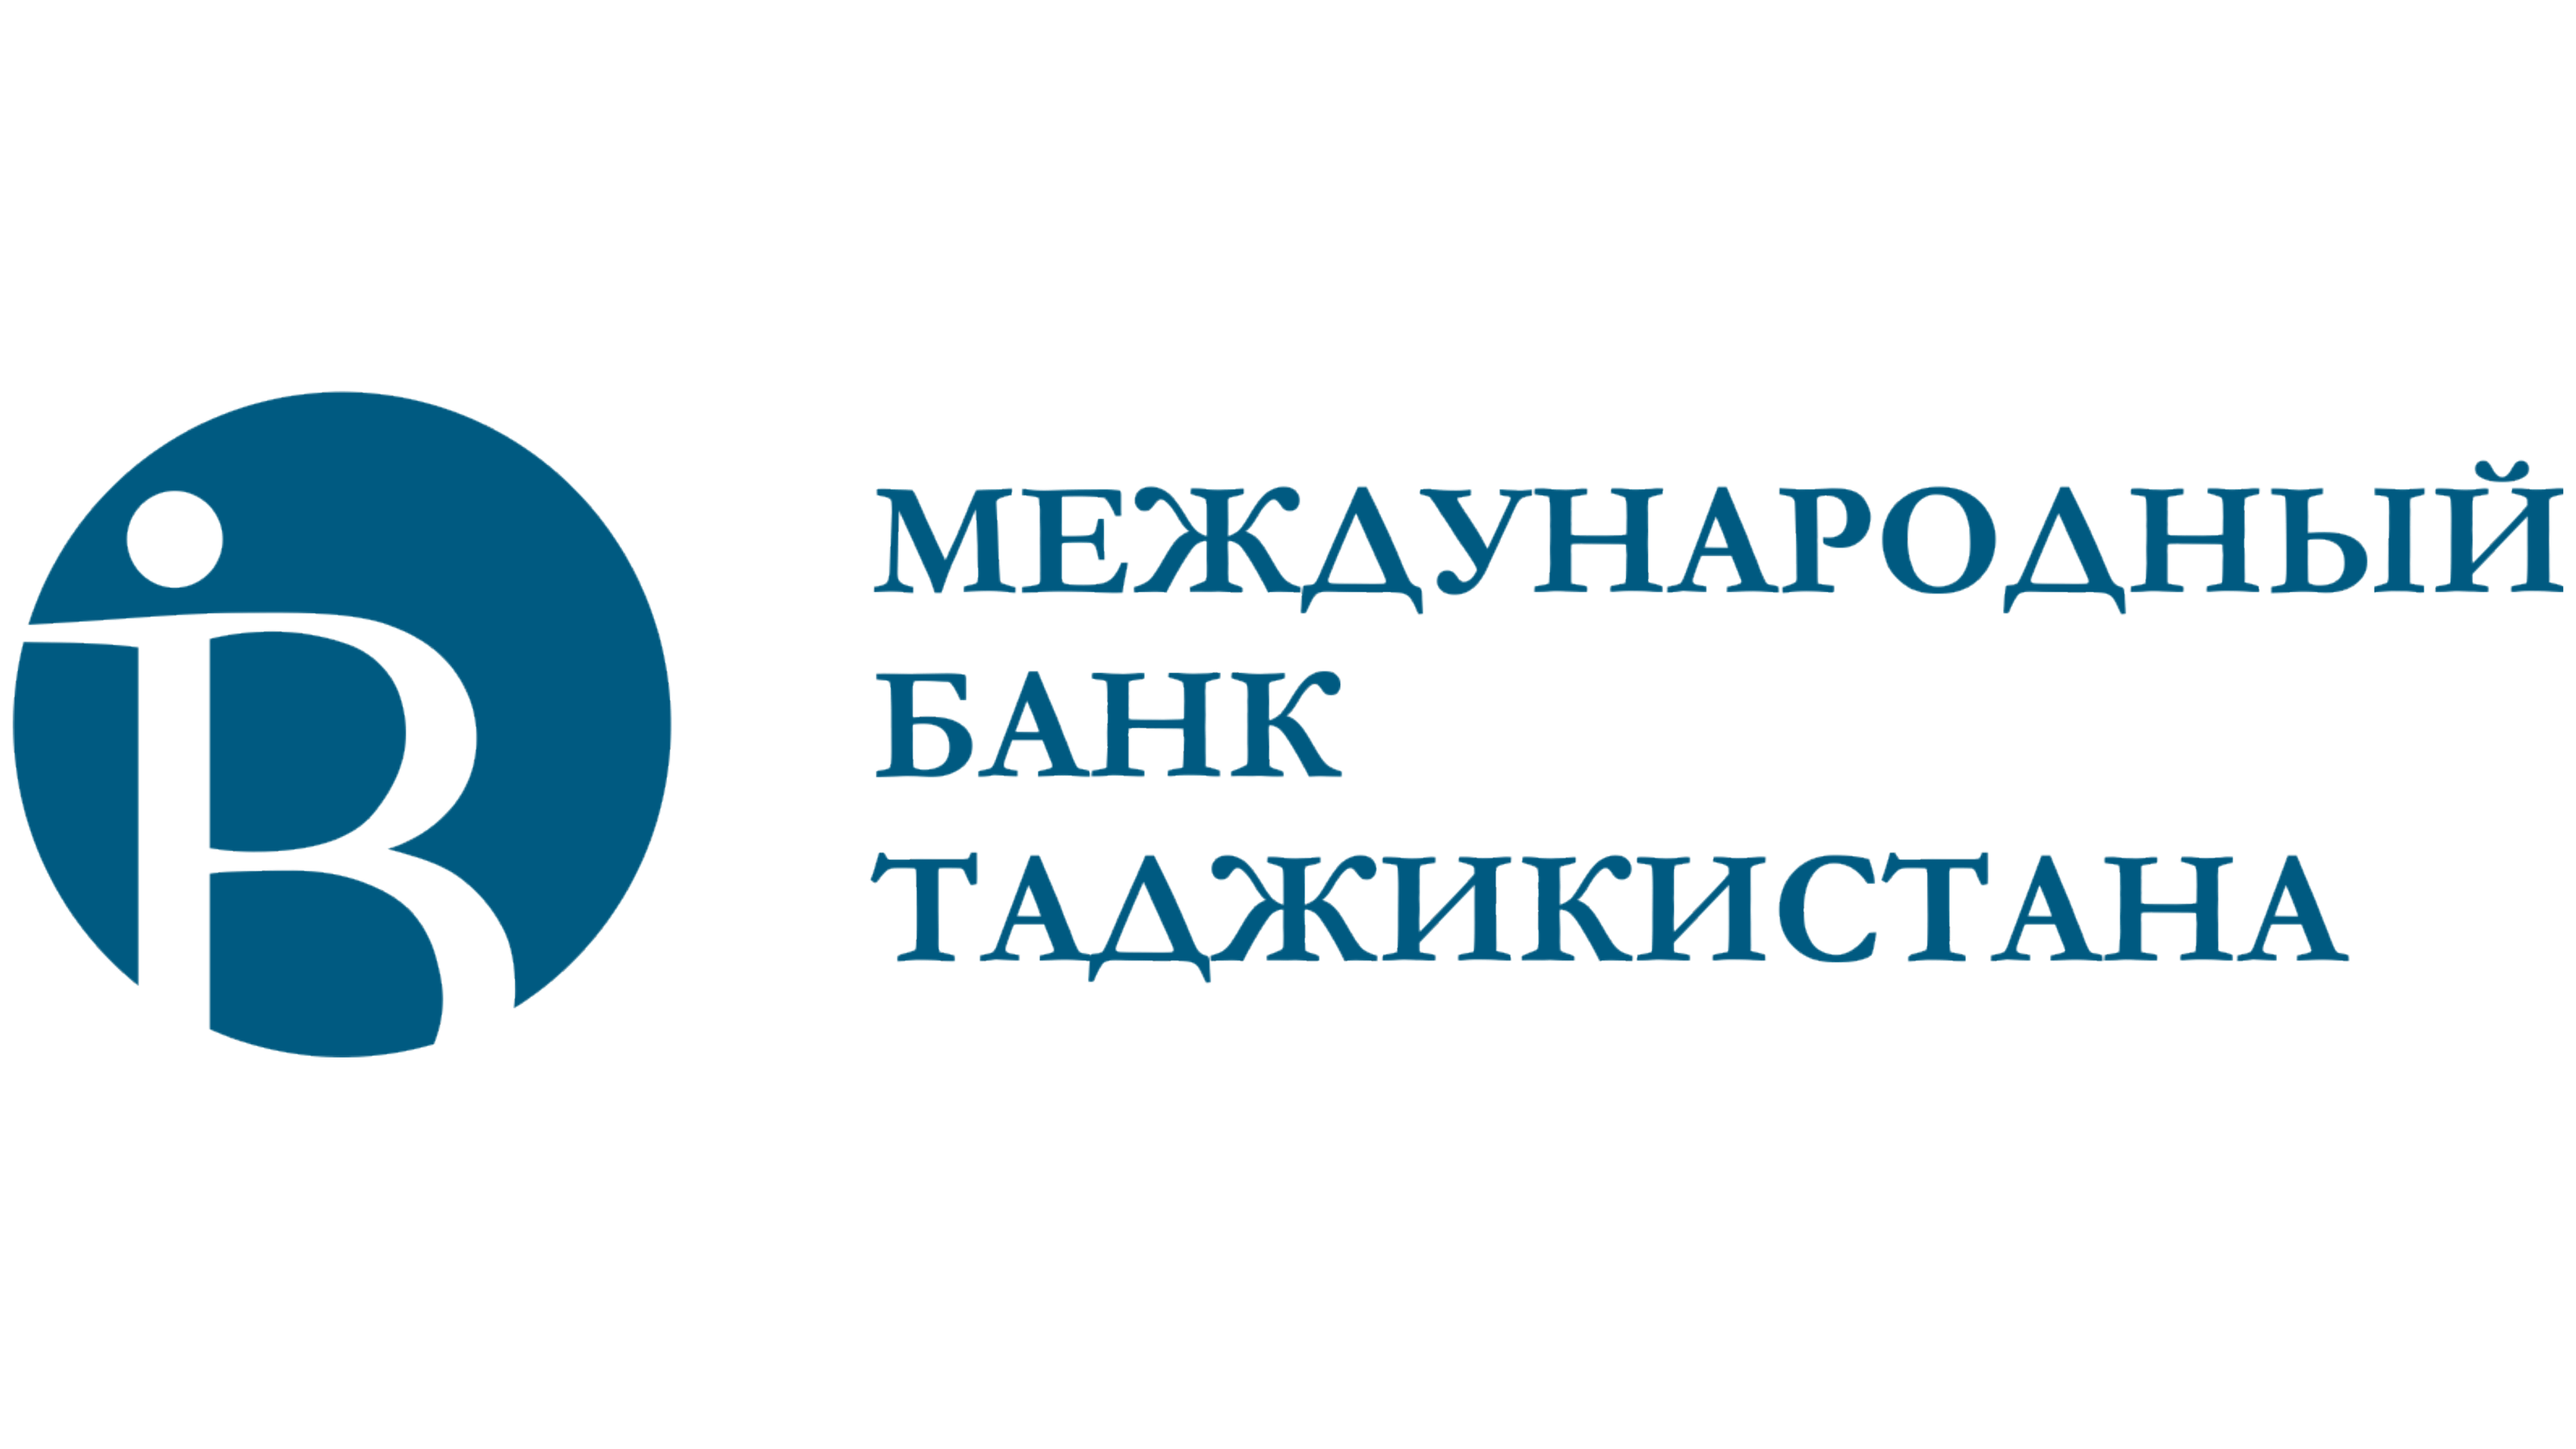 Международный таджикский банк. Международный банк Таджикистана карта. Логотип международного банка Таджикистана. Ibt банк таджикистана